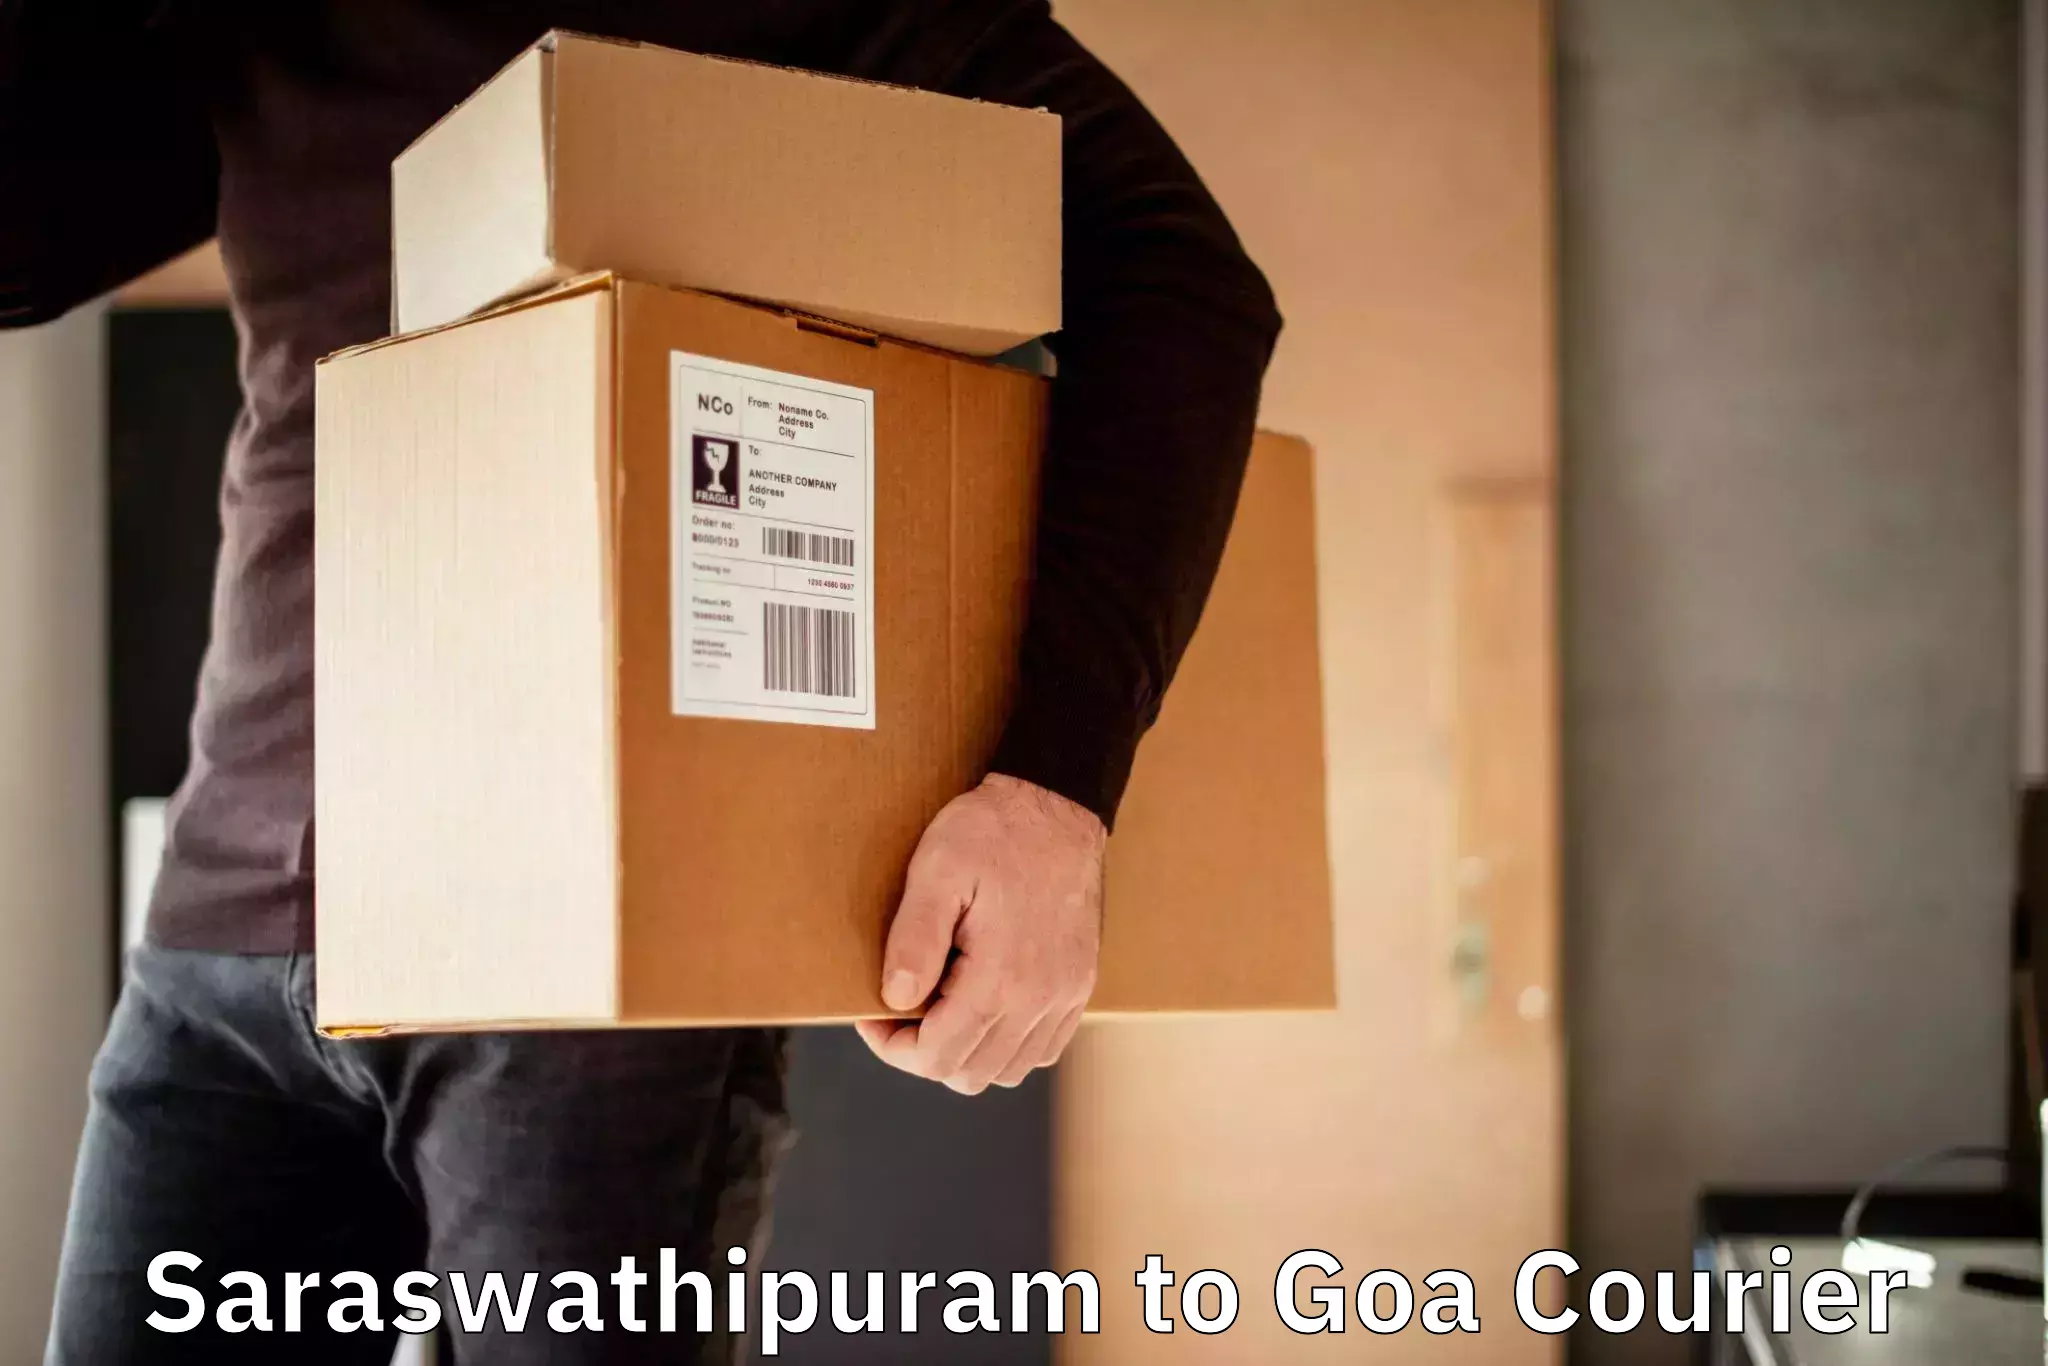 24/7 courier service Saraswathipuram to NIT Goa